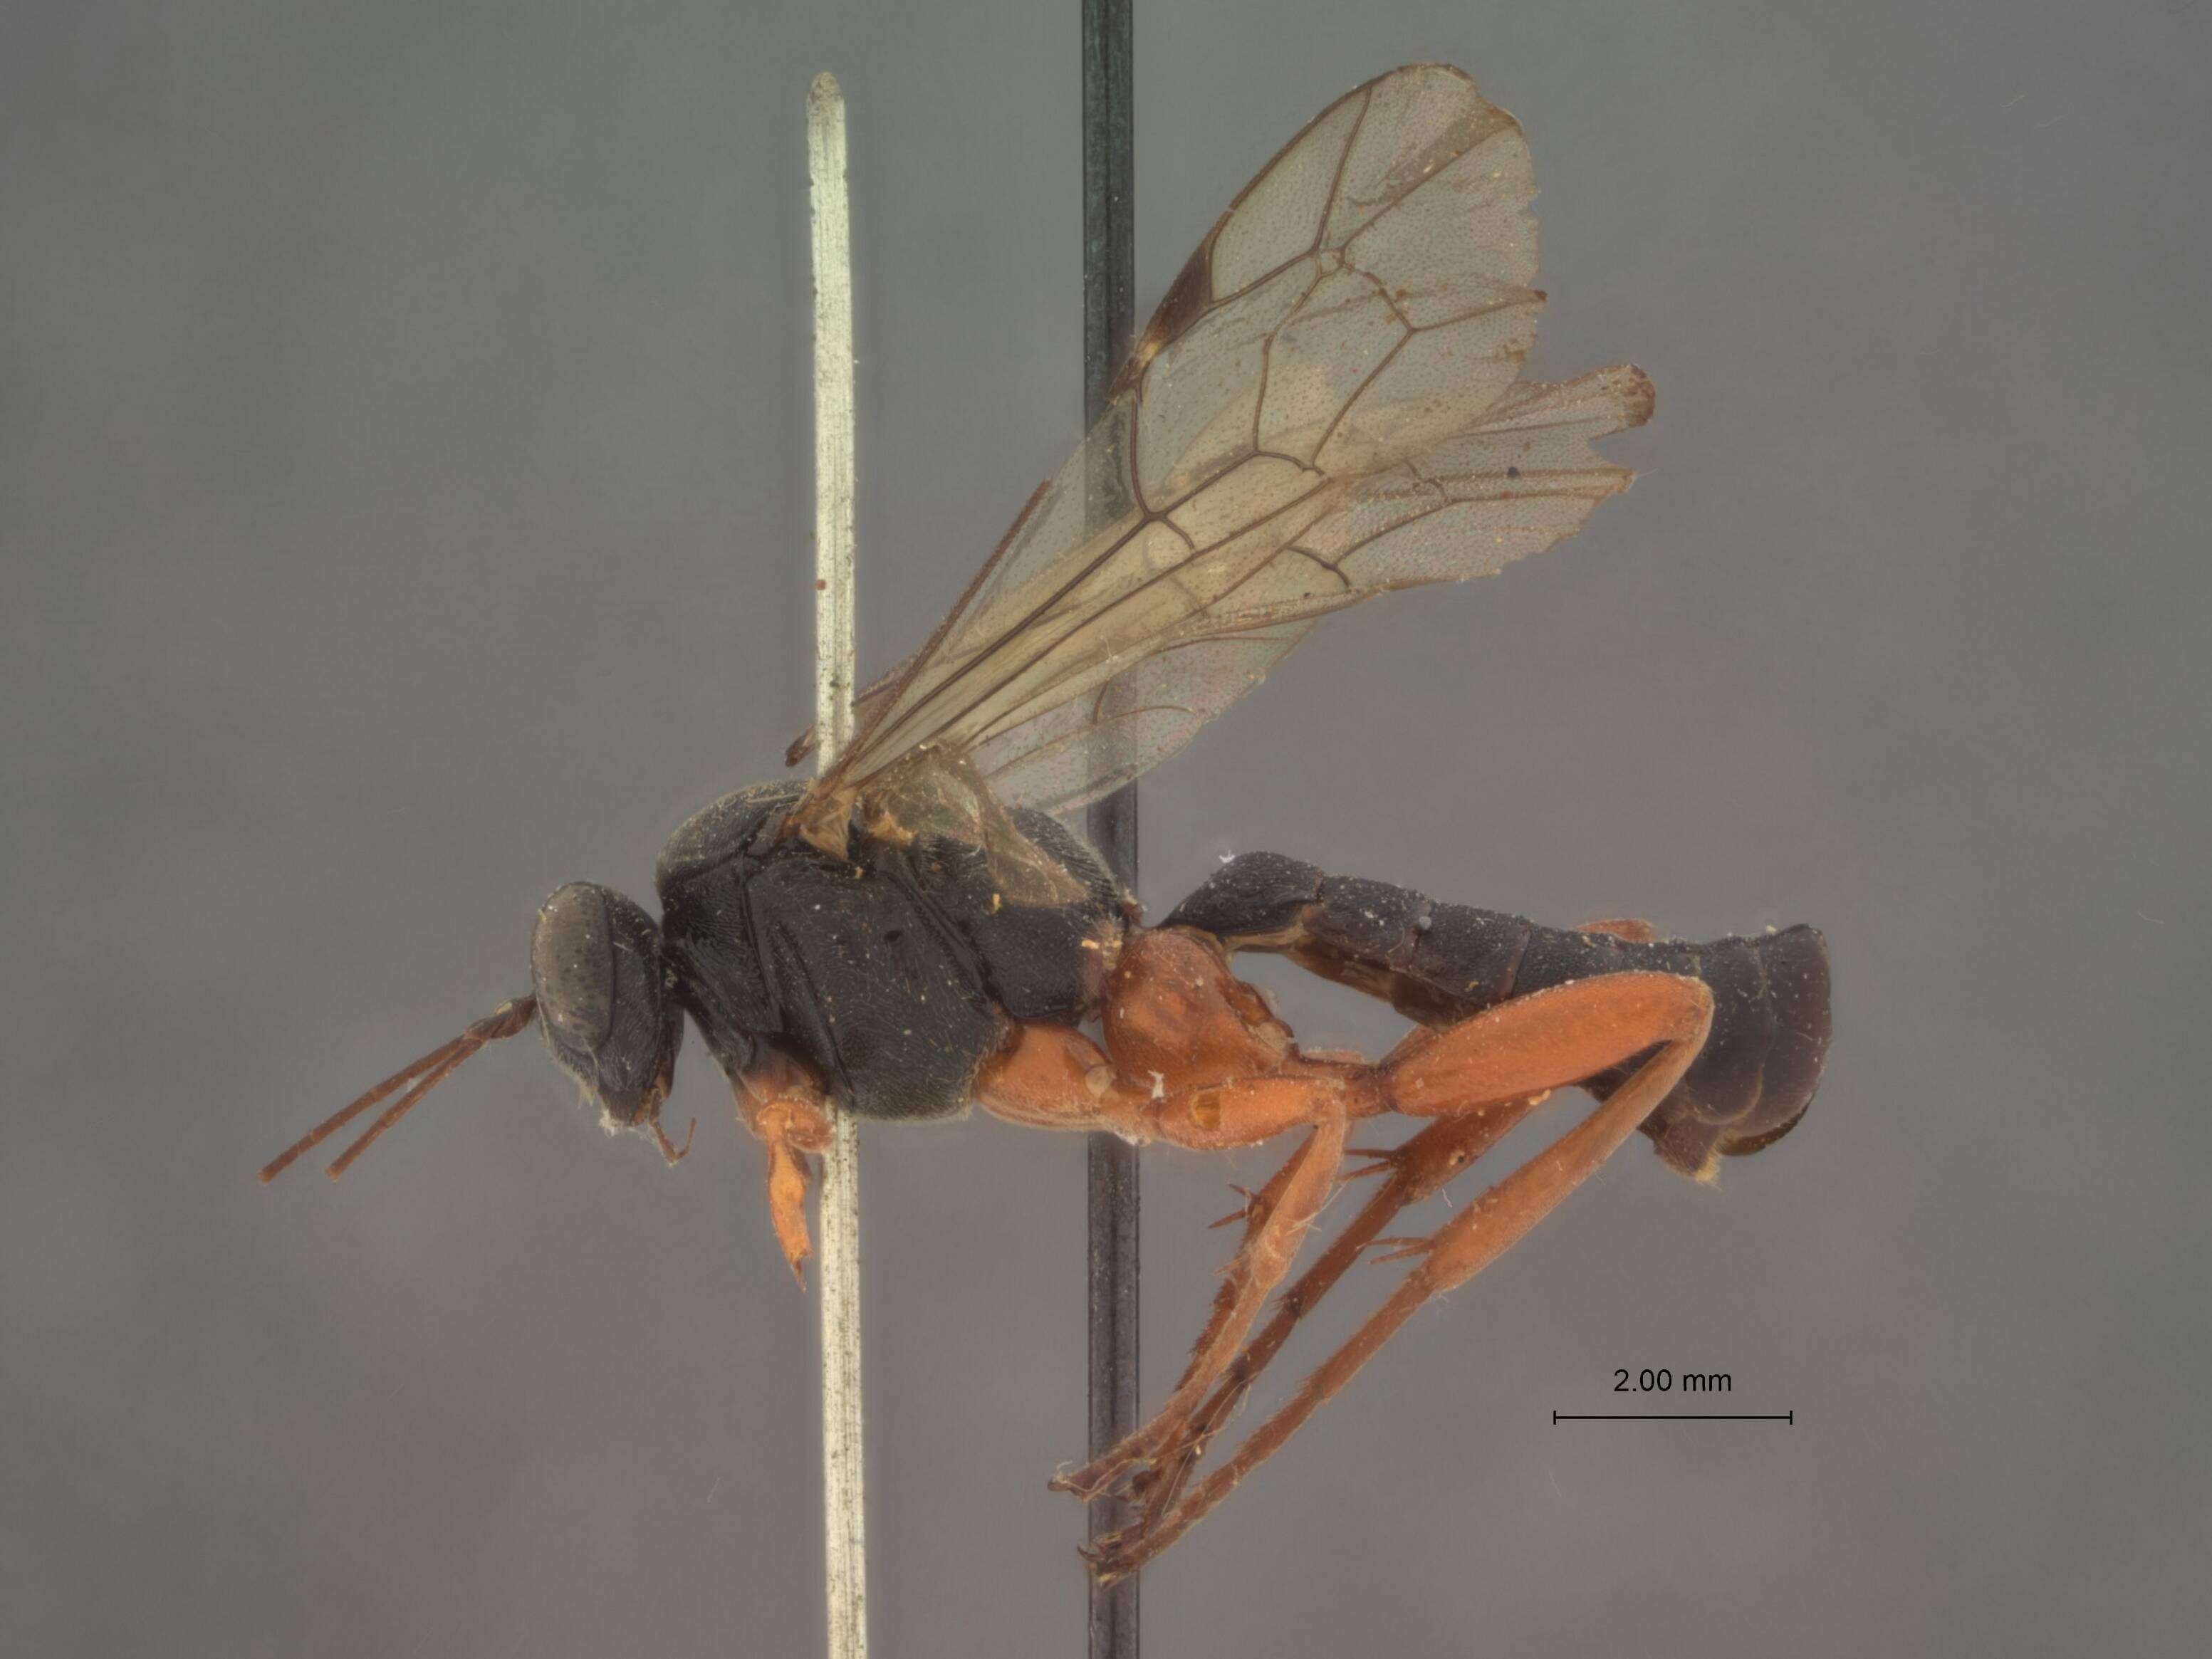 Image of Pimpla sanguinipes Cresson 1872